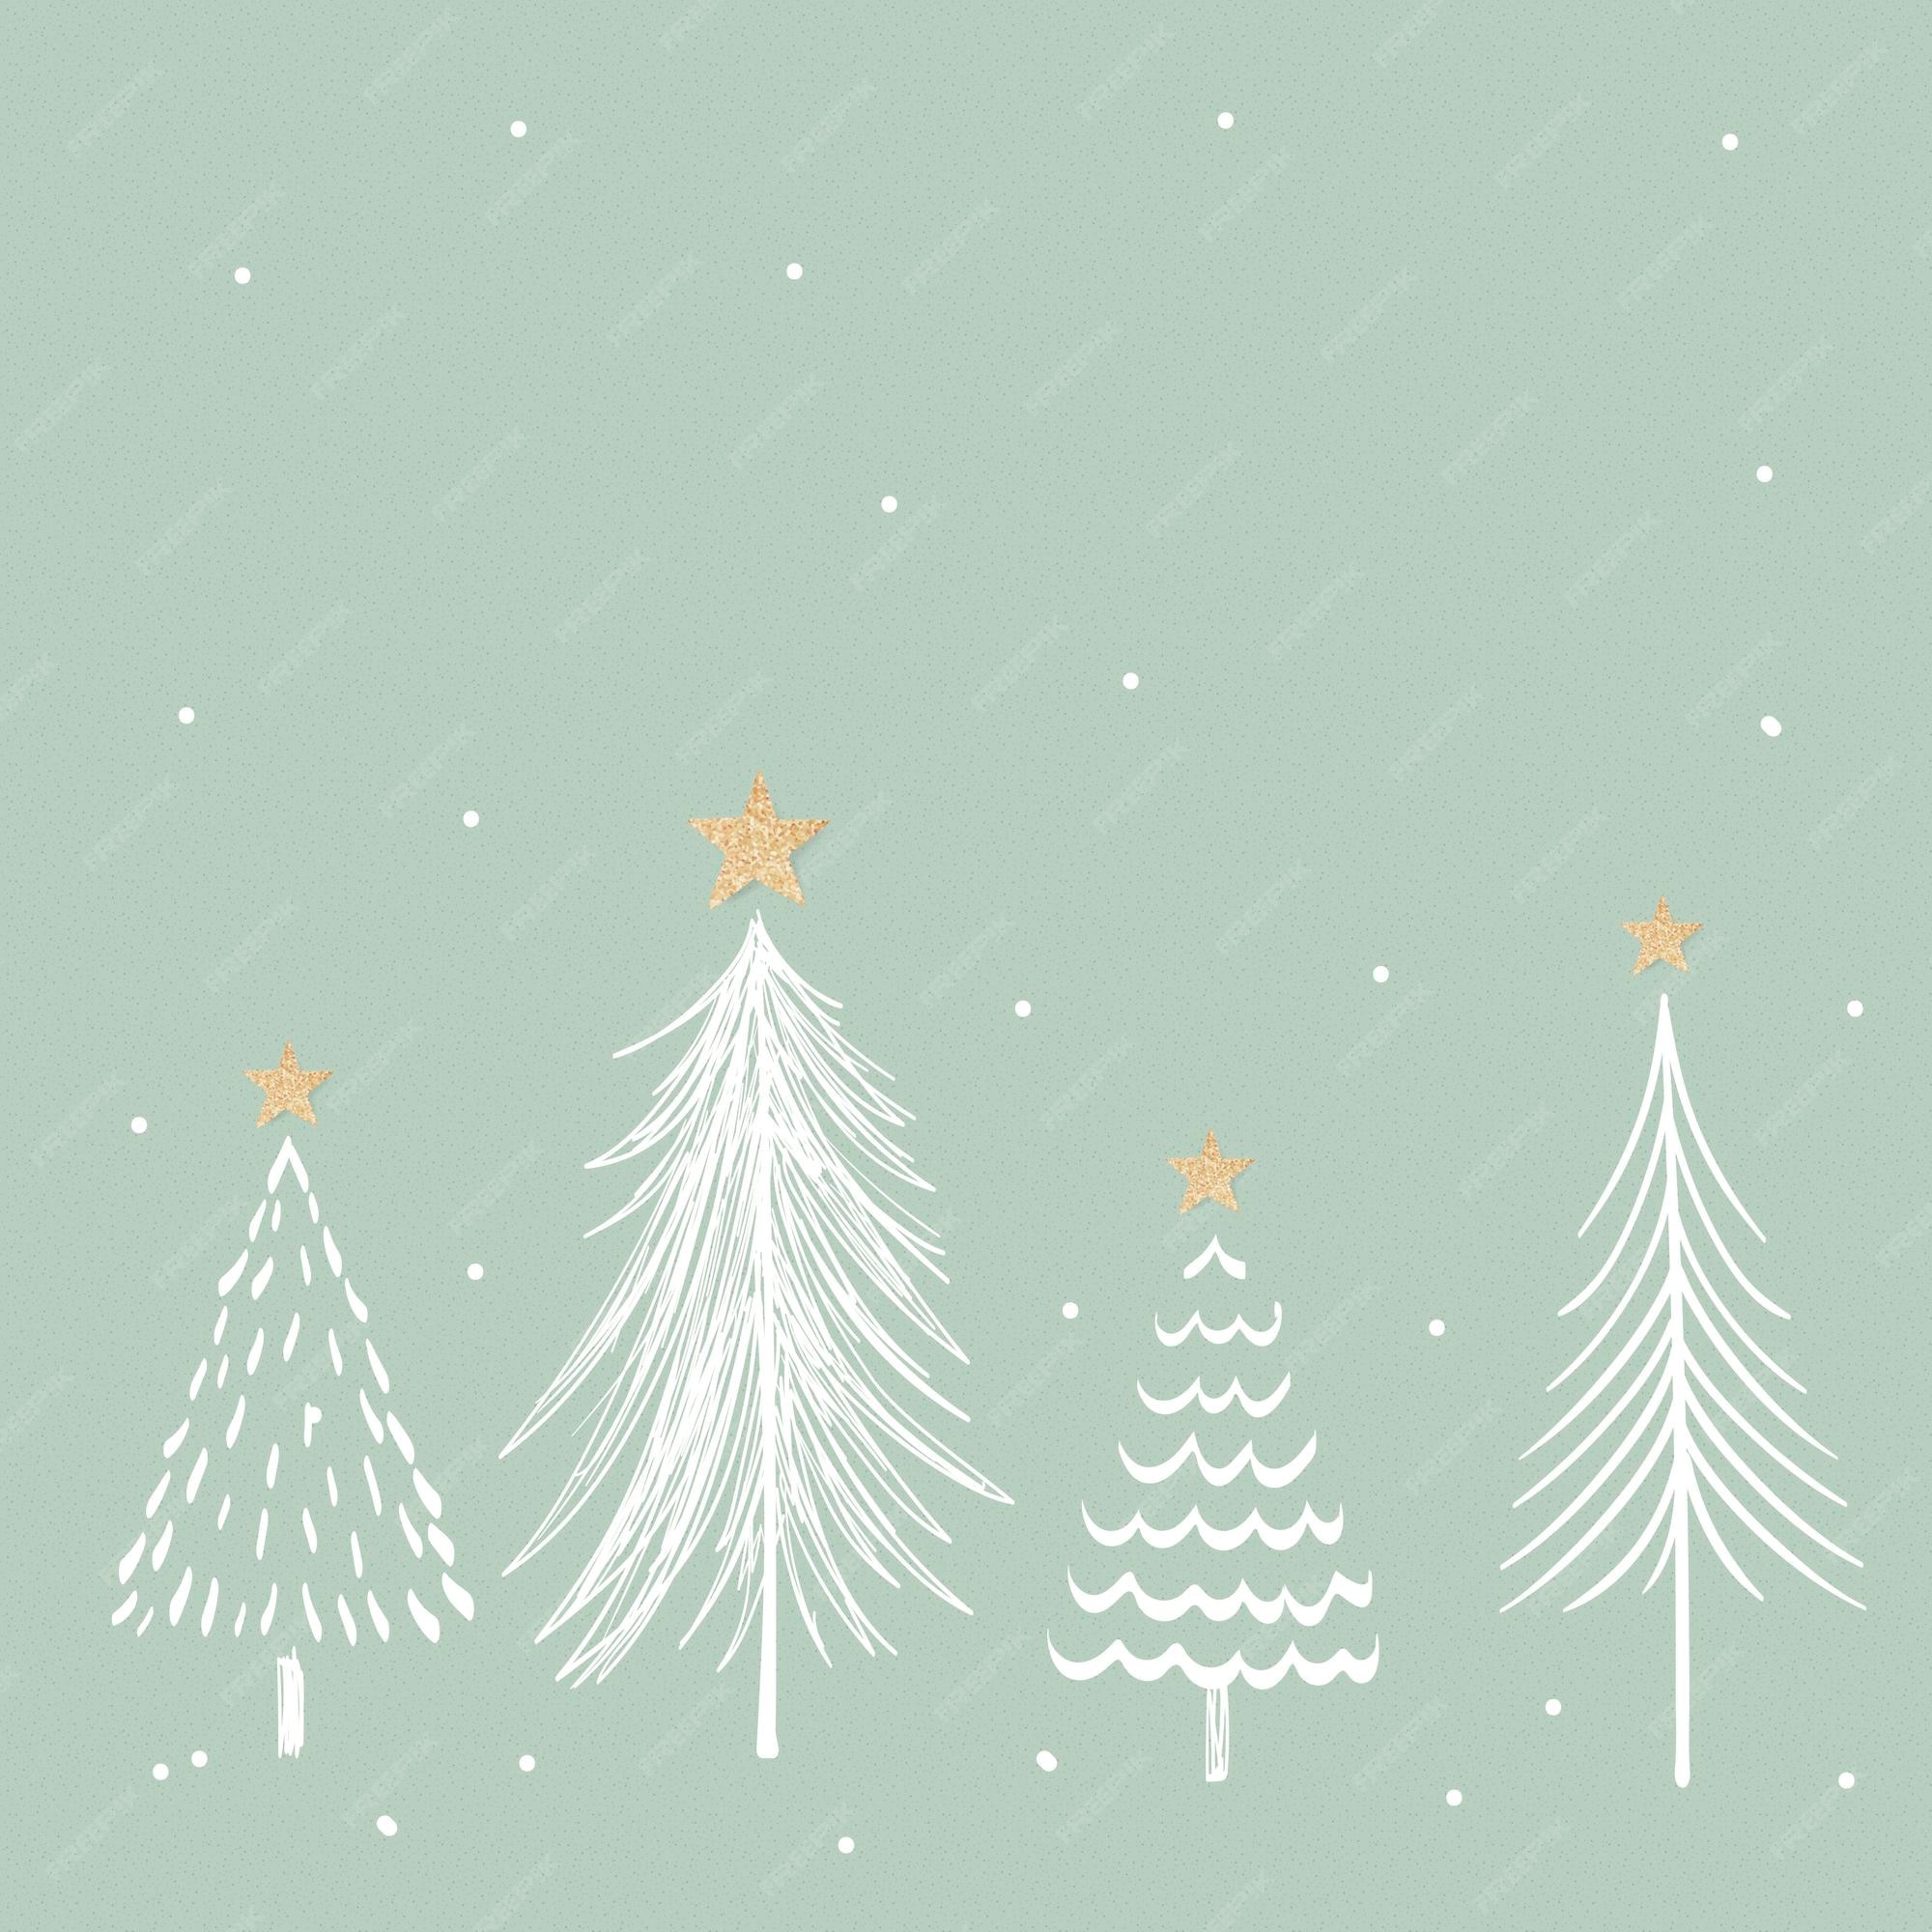 Ánh đèn Giáng Sinh là một trong những thứ tuyệt vời nhất của mùa lễ hội. Những chuỗi đèn sáng rực rỡ, lung linh tạo nên một không gian rực rỡ, ấm áp và rộn ràng cho người ta đón chờ một ngày đặc biệt. Hãy tưởng tượng một cảnh tượng lãng mạn khi bạn đứng dưới những ánh đèn Giáng Sinh và cảm nhận rằng tình yêu, hy vọng và hạnh phúc đang đến với bạn. Hãy cùng chiêm ngưỡng hình ảnh để cảm nhận điều này!